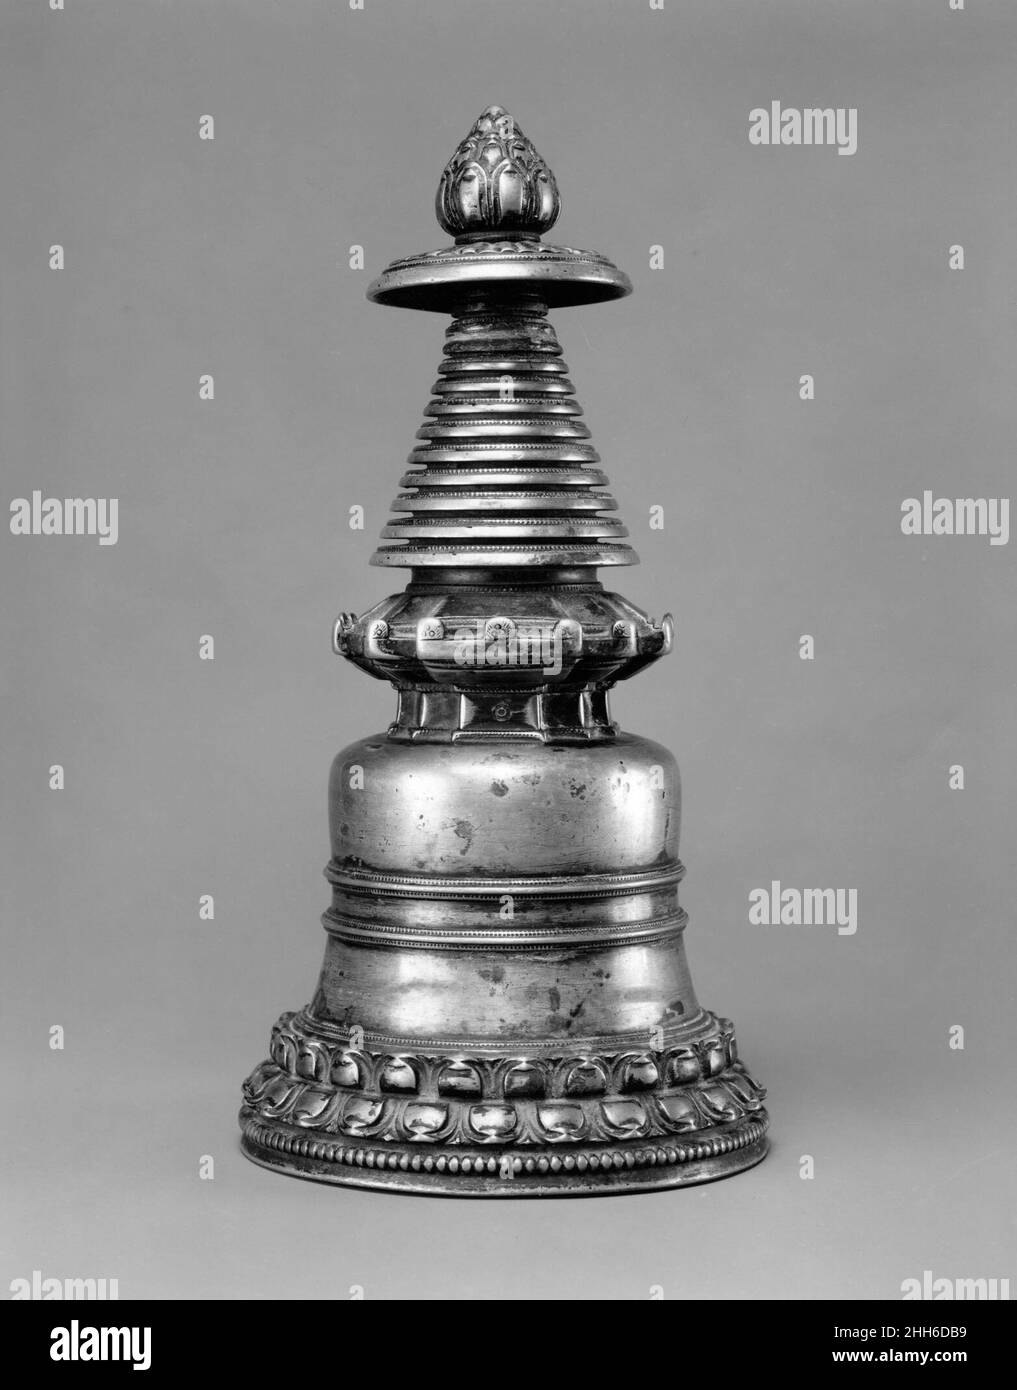 Stupa Westtibet des 13th. Jahrhunderts Gedenkstupas (tibetanisch: chorten) sind die ältesten Symbole des Buddhismus und wurden zum Sinnbild sowohl des Dharma als auch des Buddha selbst. Repositorien für Reliquien, die mit dem Buddha, seinen Schülern und ihren Abstammungen in Verbindung gebracht wurden, nahmen sie einen zentralen Platz in der späteren buddhistischen Bildsprache ein. Tragbare Versionen enthalten oft Reliquien bedeutender Mönche oder heiliger Texte. Stupa. Westtibet. 13th Jahrhundert. Messing. Metallverarbeitung Stockfoto